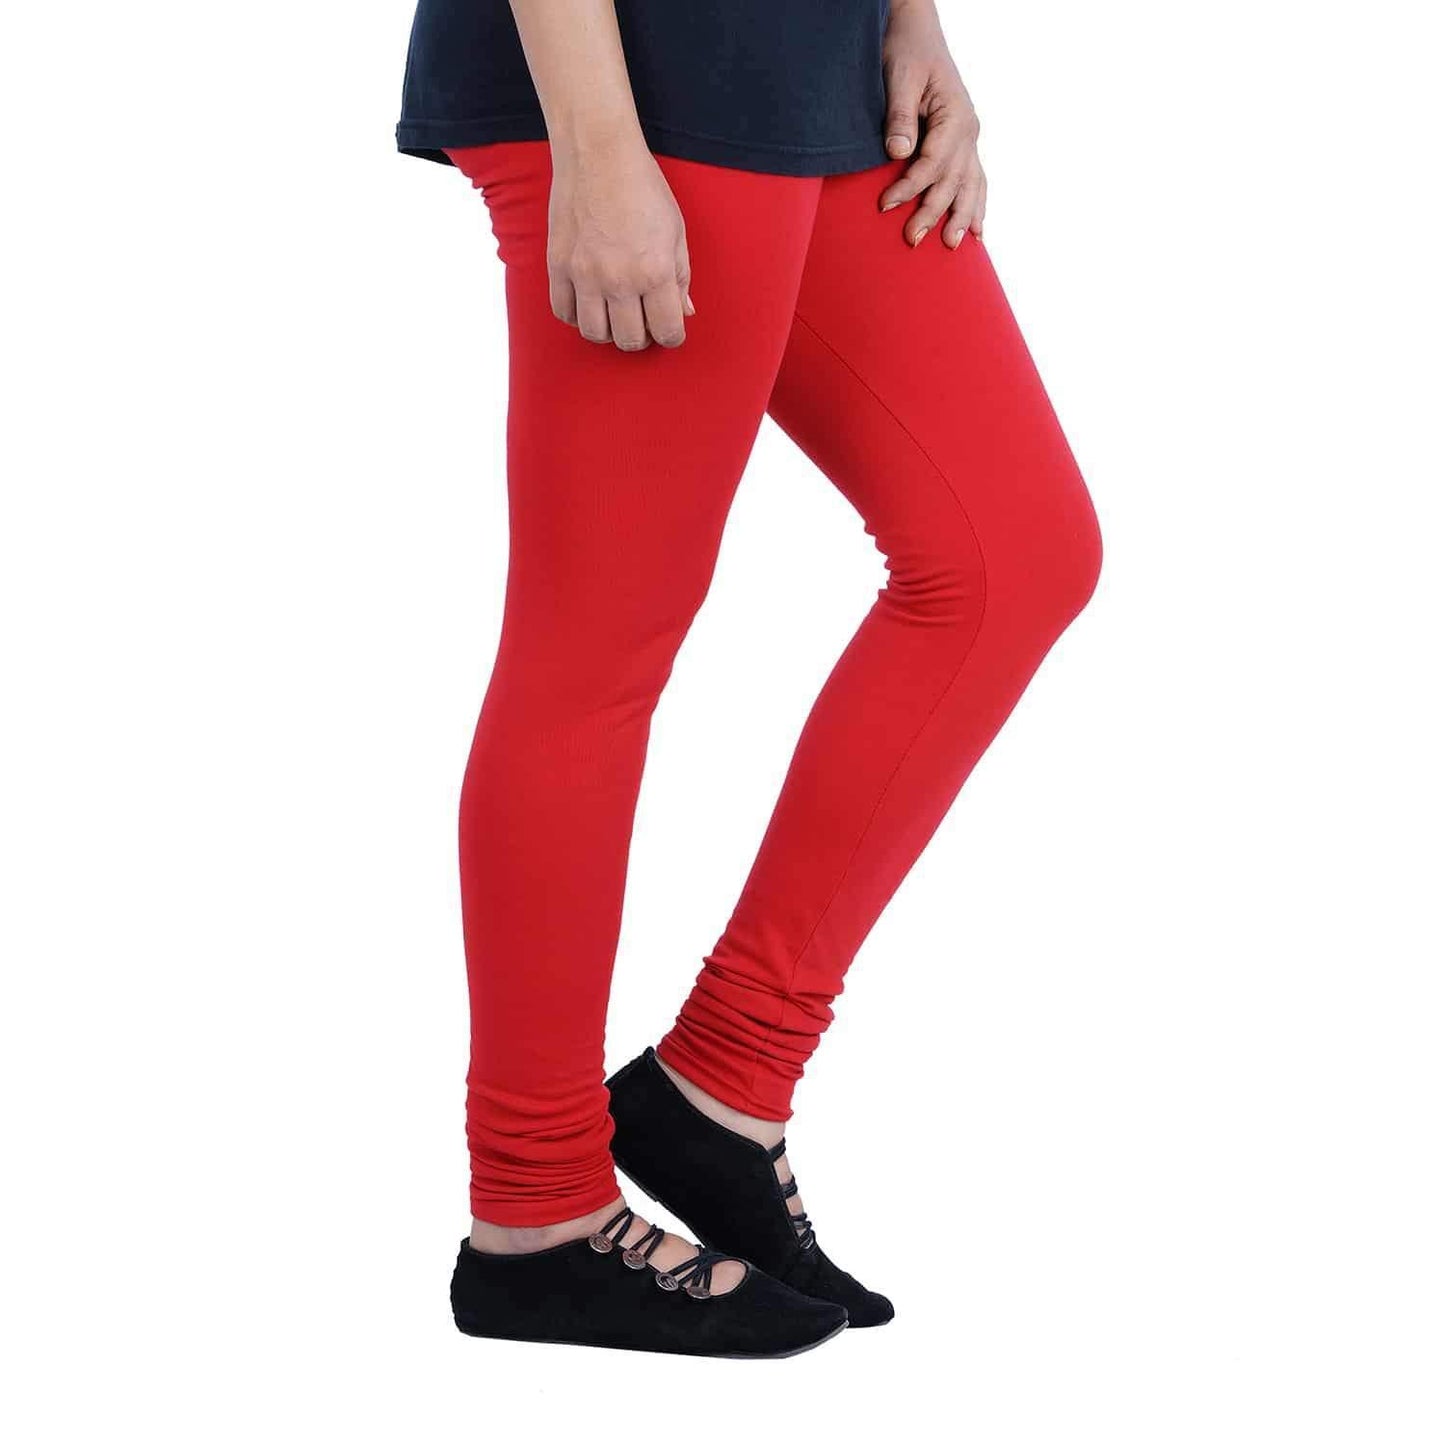 Red Plain Lycra Leggings - Shopindiapparels.com